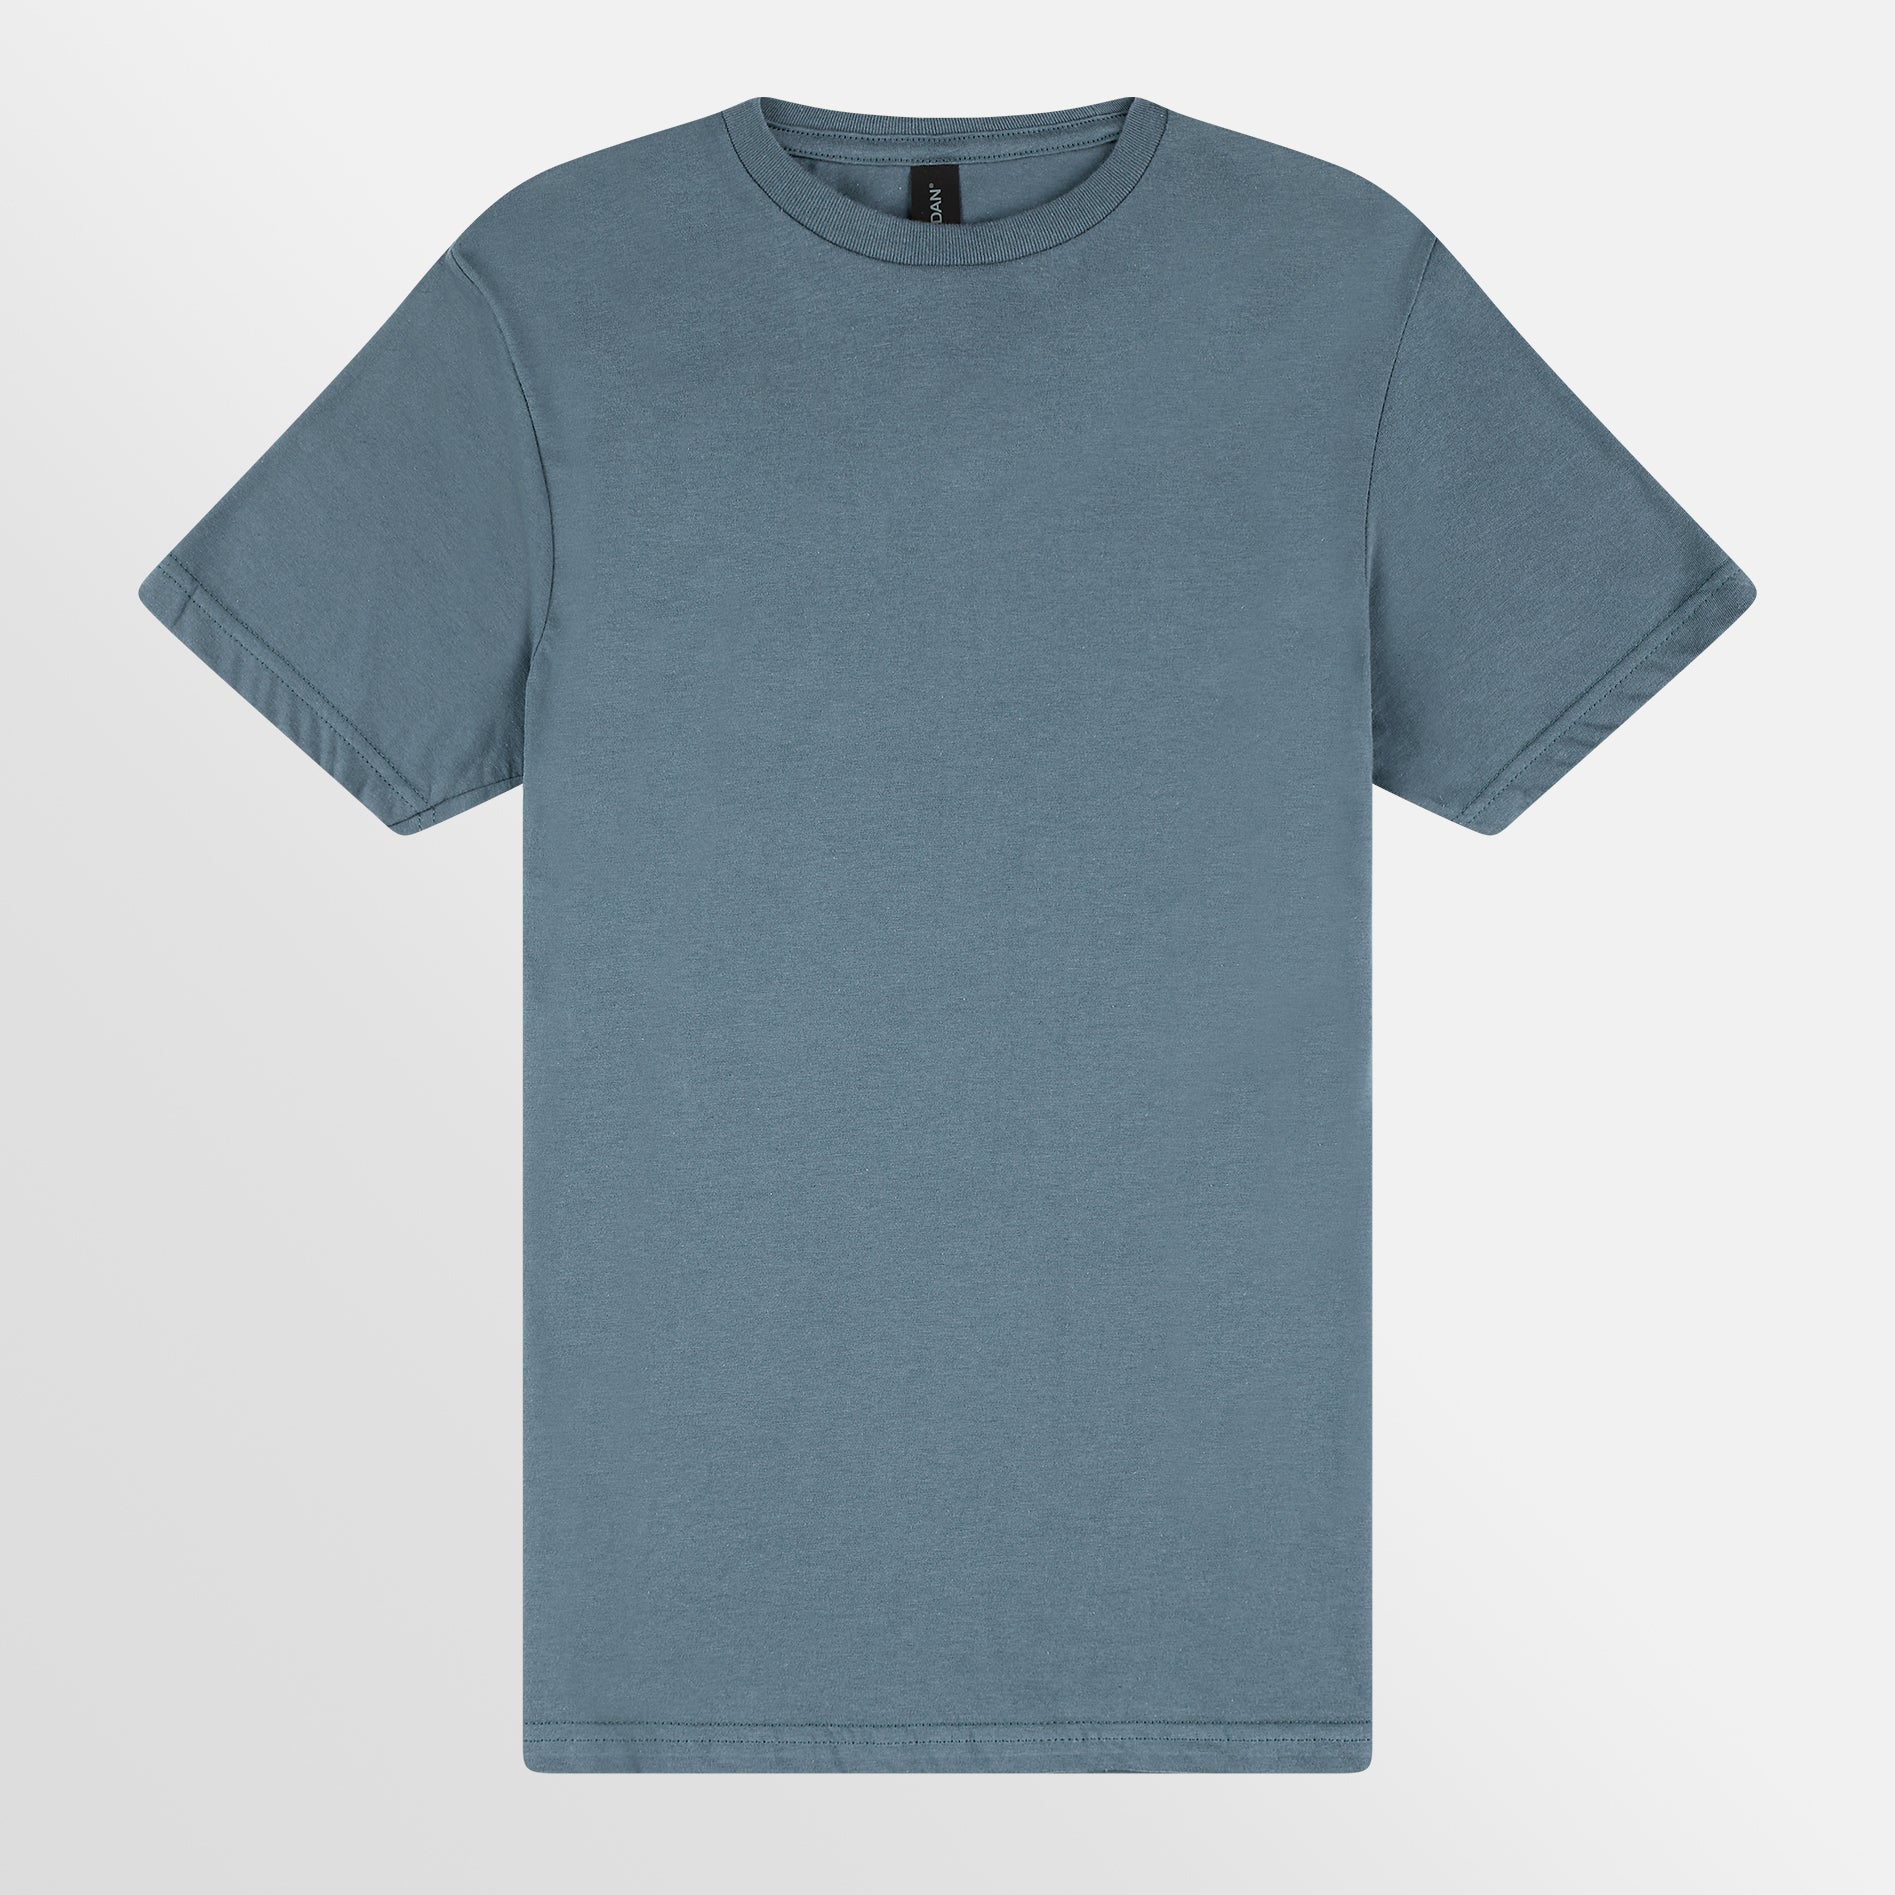 10+ Light Blue Tee Shirt